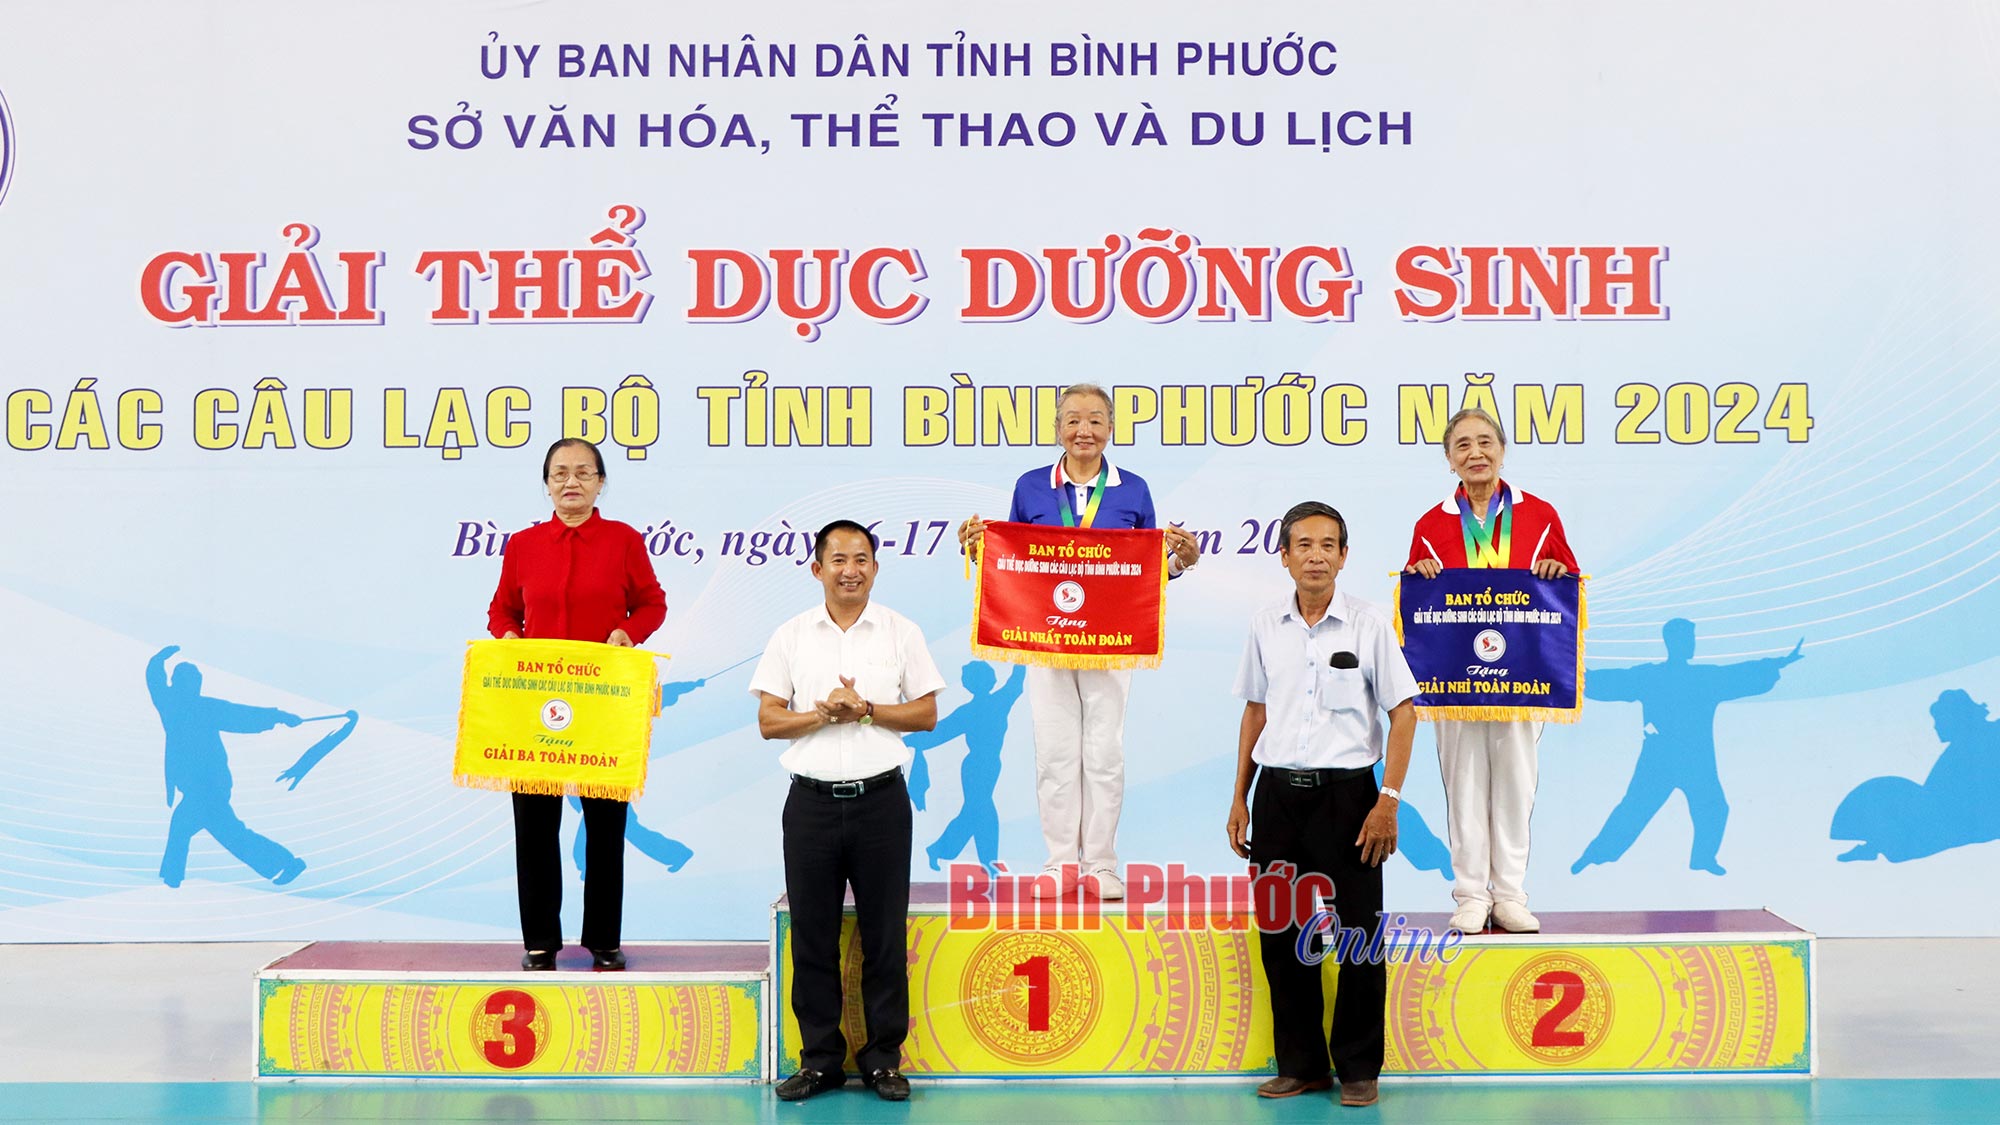 Bế mạc giải thể dục dưỡng sinh tỉnh Bình Phước năm 2024